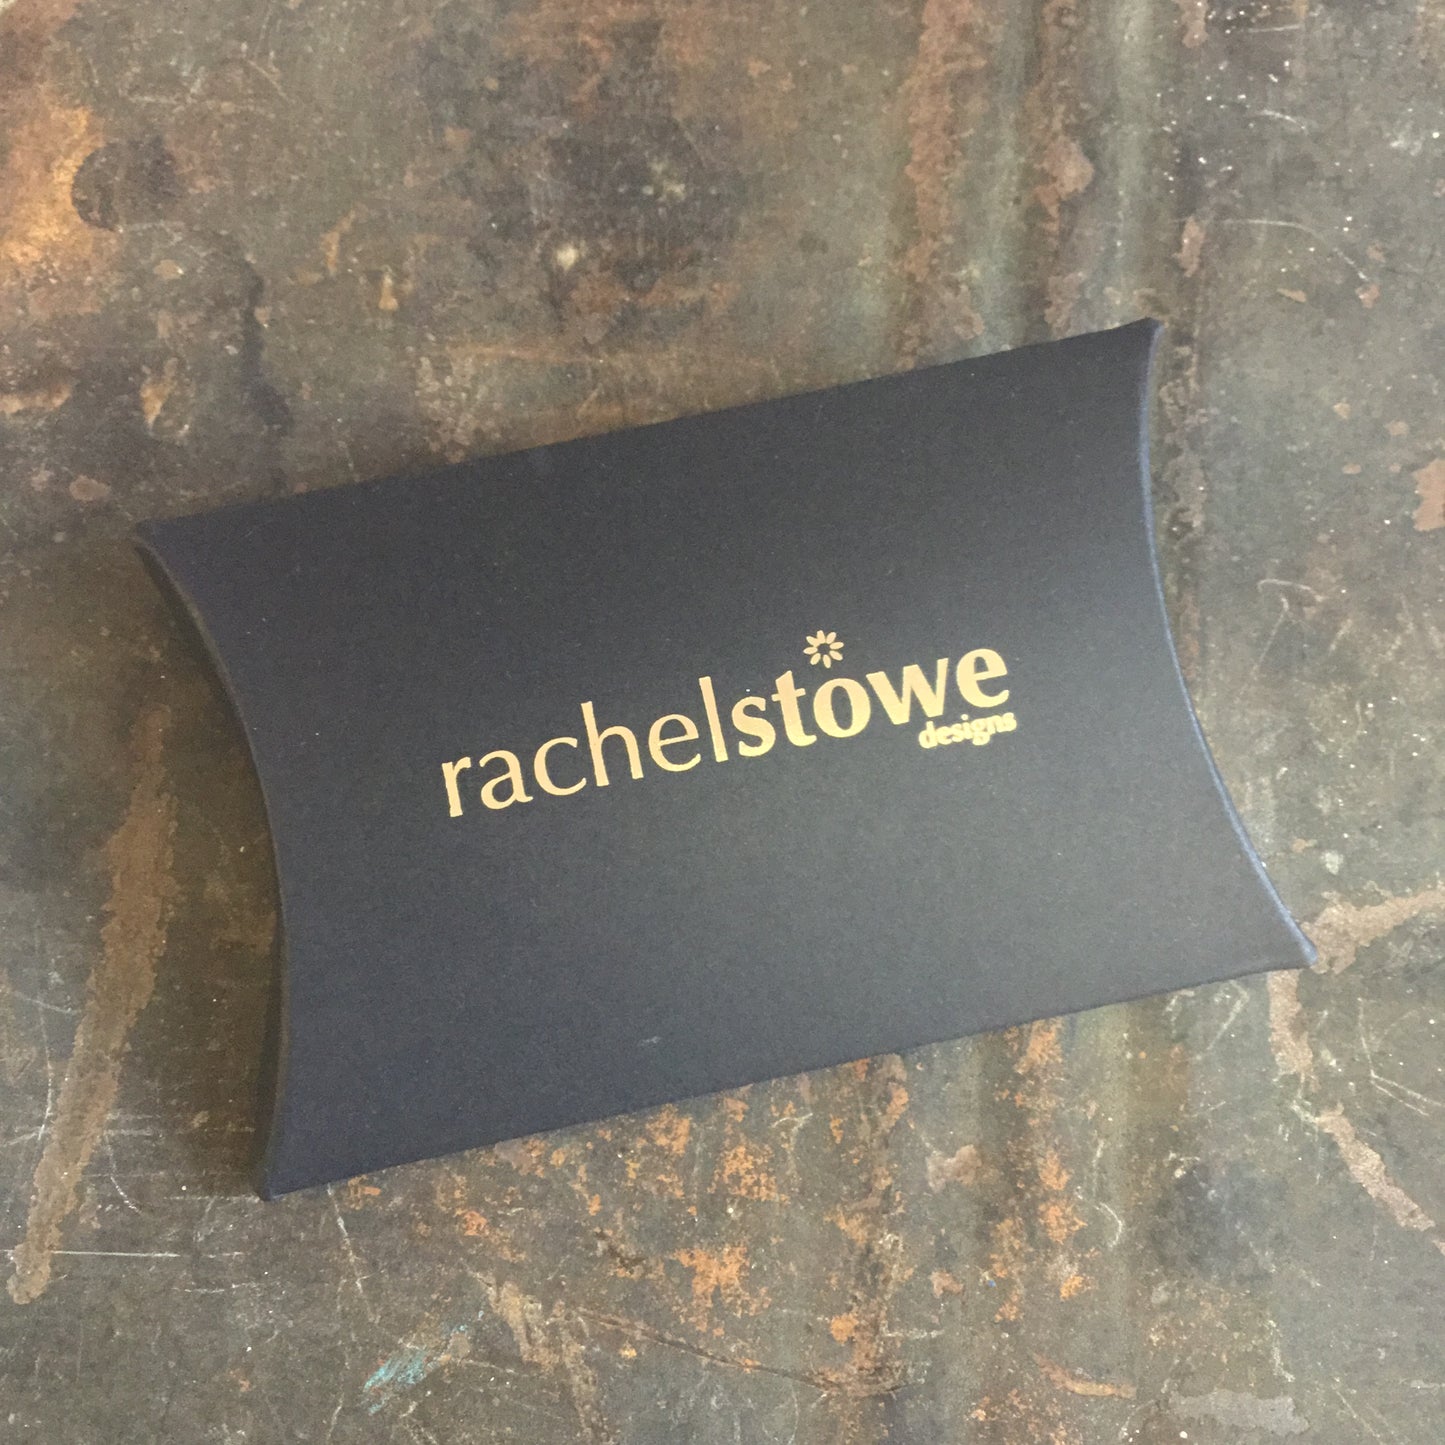 Rachel Stowe - Handprinted Disk Earrings in Amber*